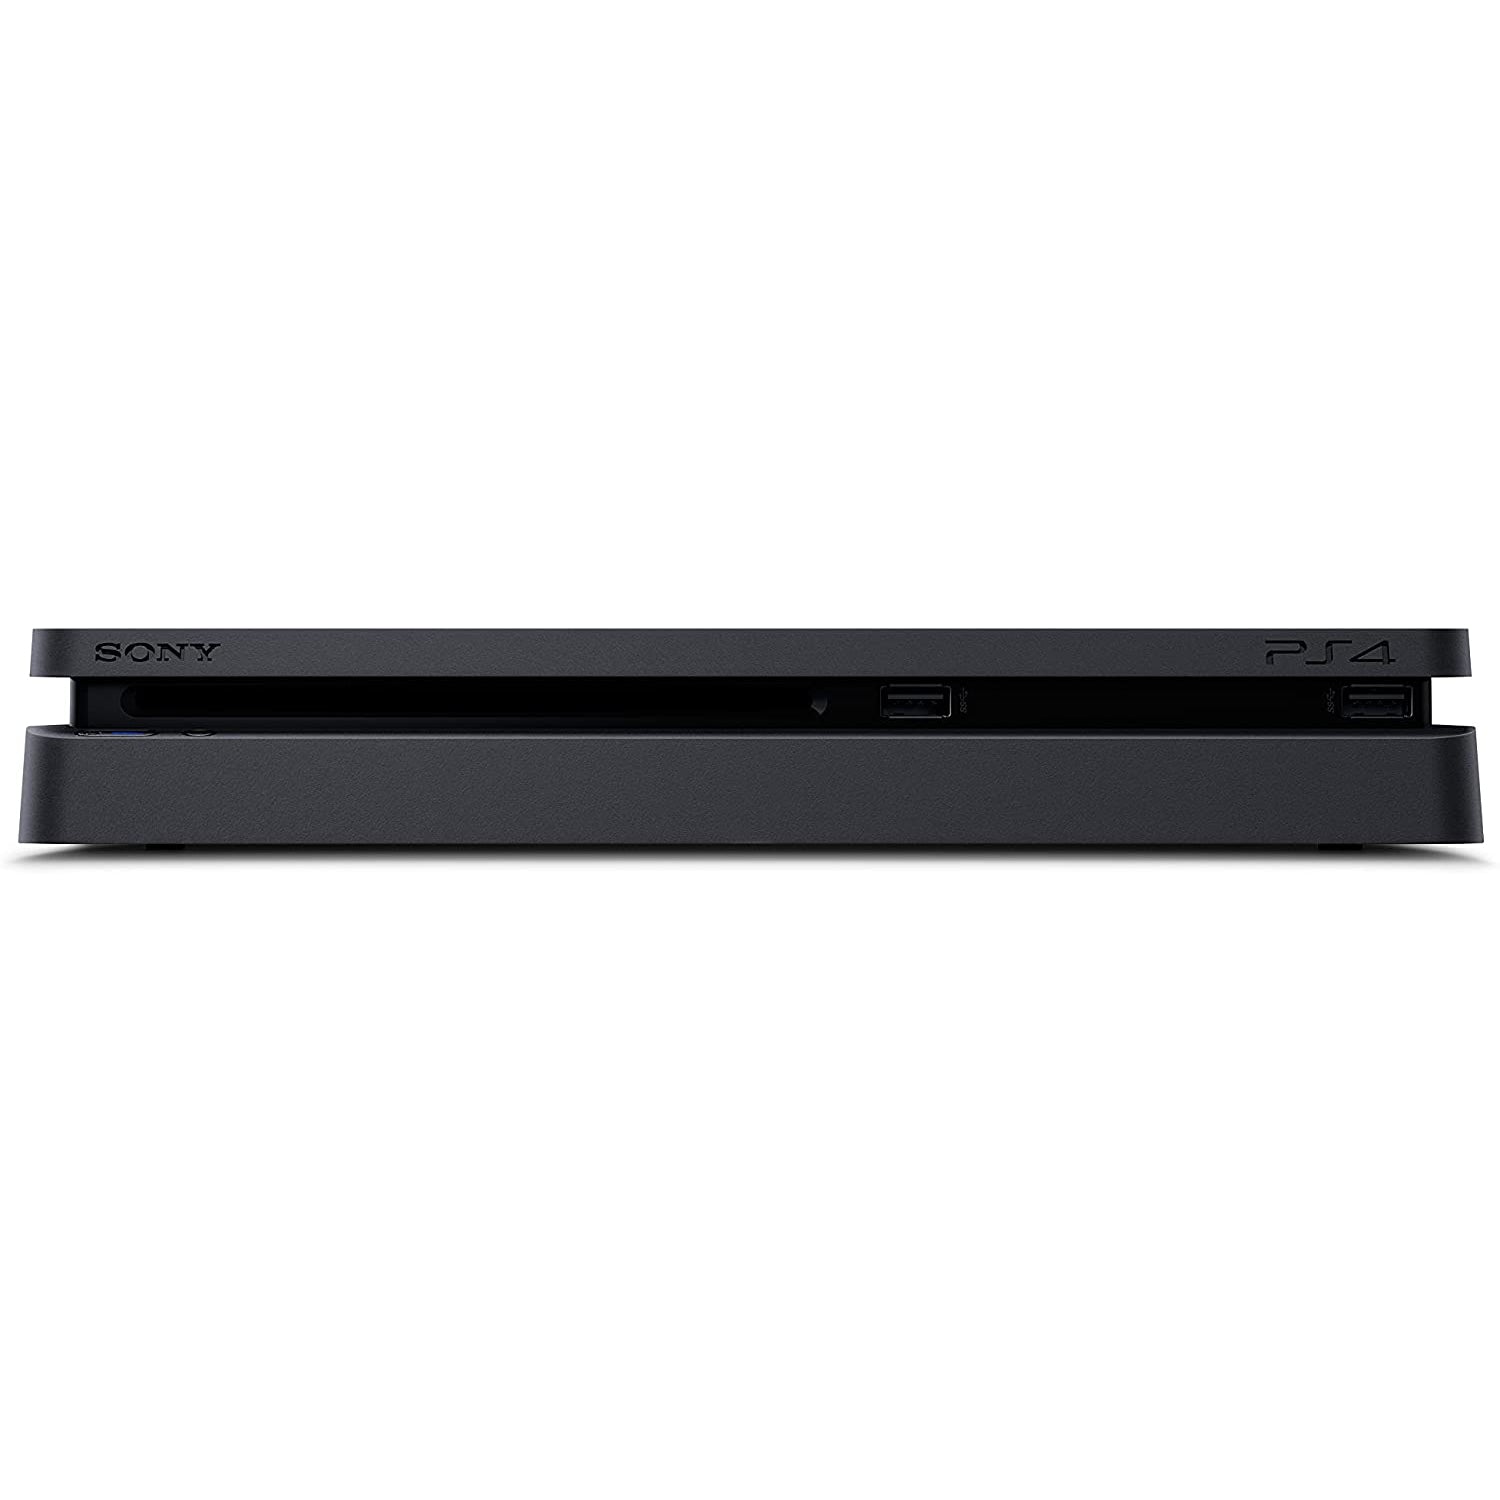 Sony PlayStation 4 Slim Console 500GB - Black - Refurbished Good